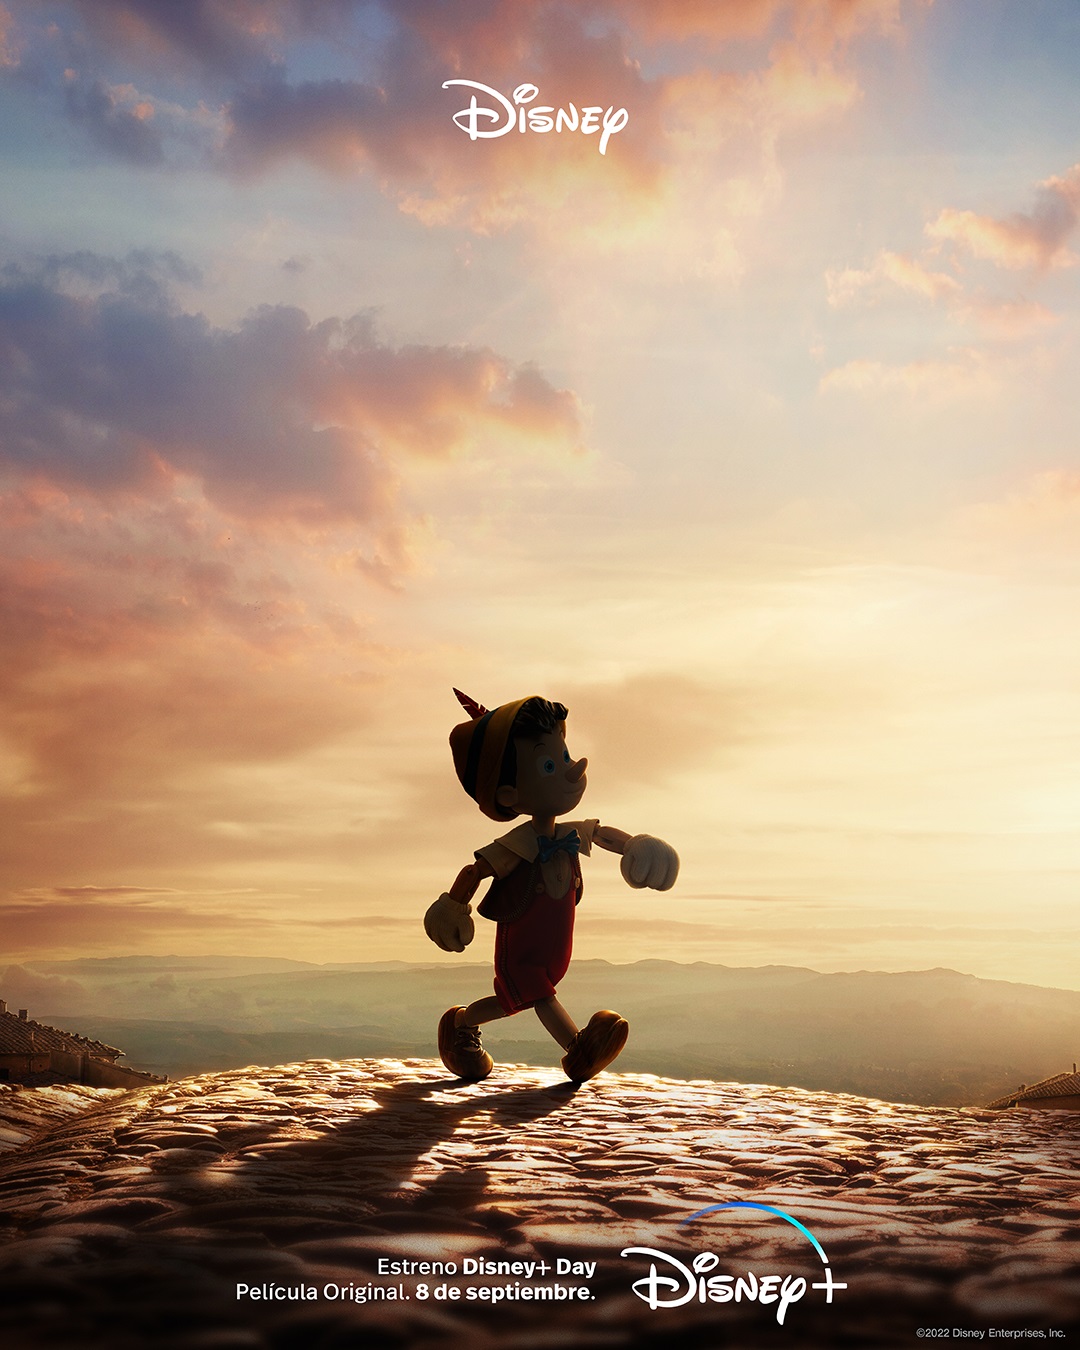 Primer Teaser trailer de Pinocho, con Tom Hanks como Geppetto